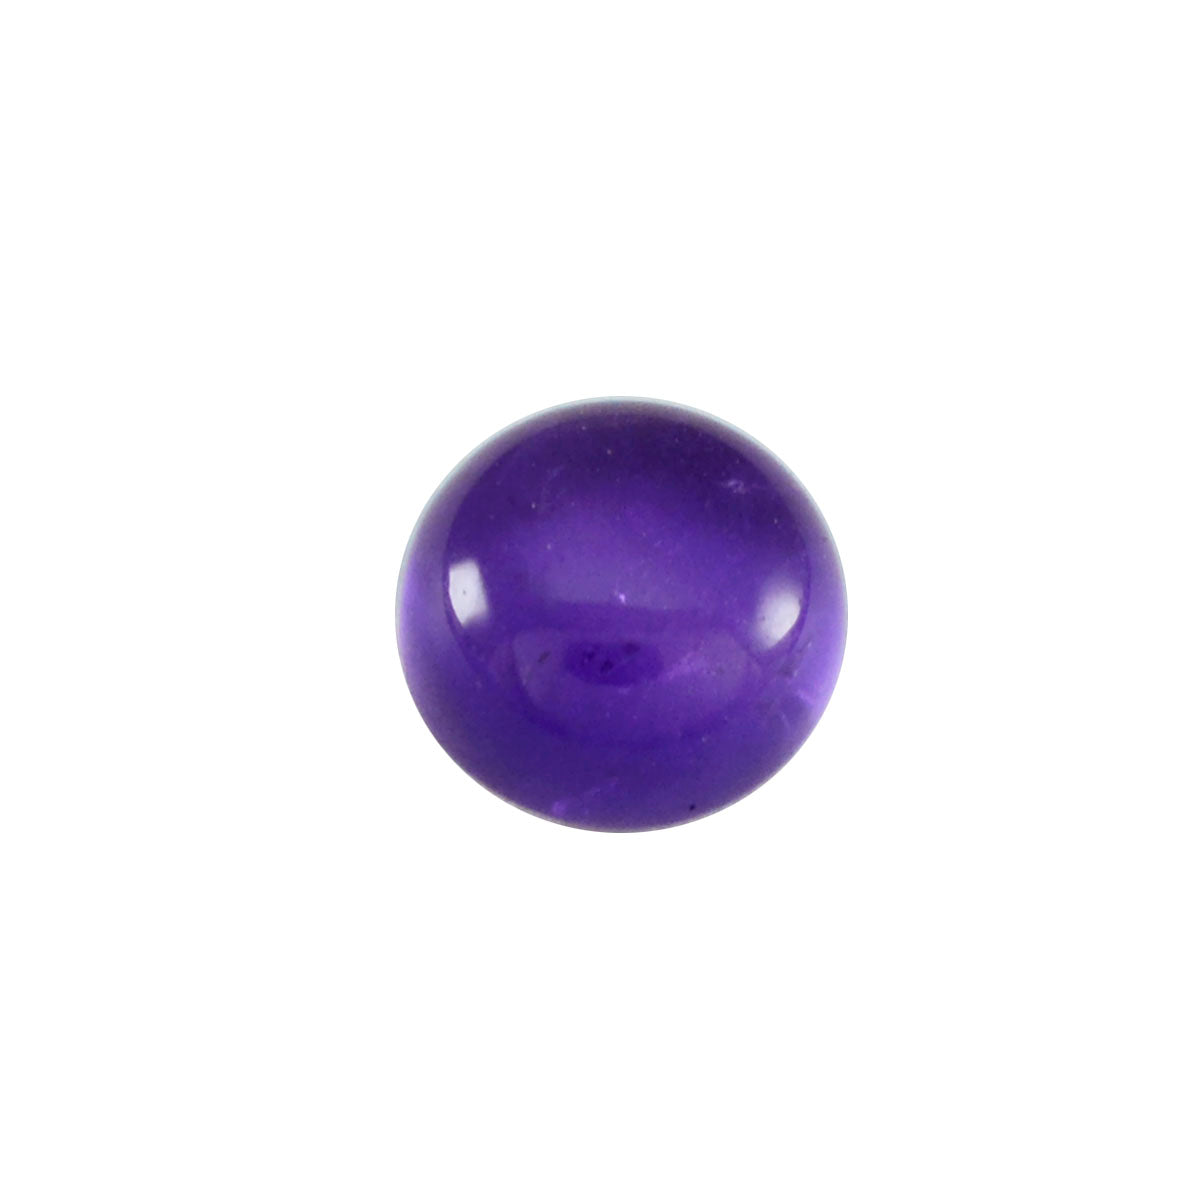 Riyogems 1PC Purple Amethyst Cabochon 11x11 mm Round Shape AAA Quality Gemstone